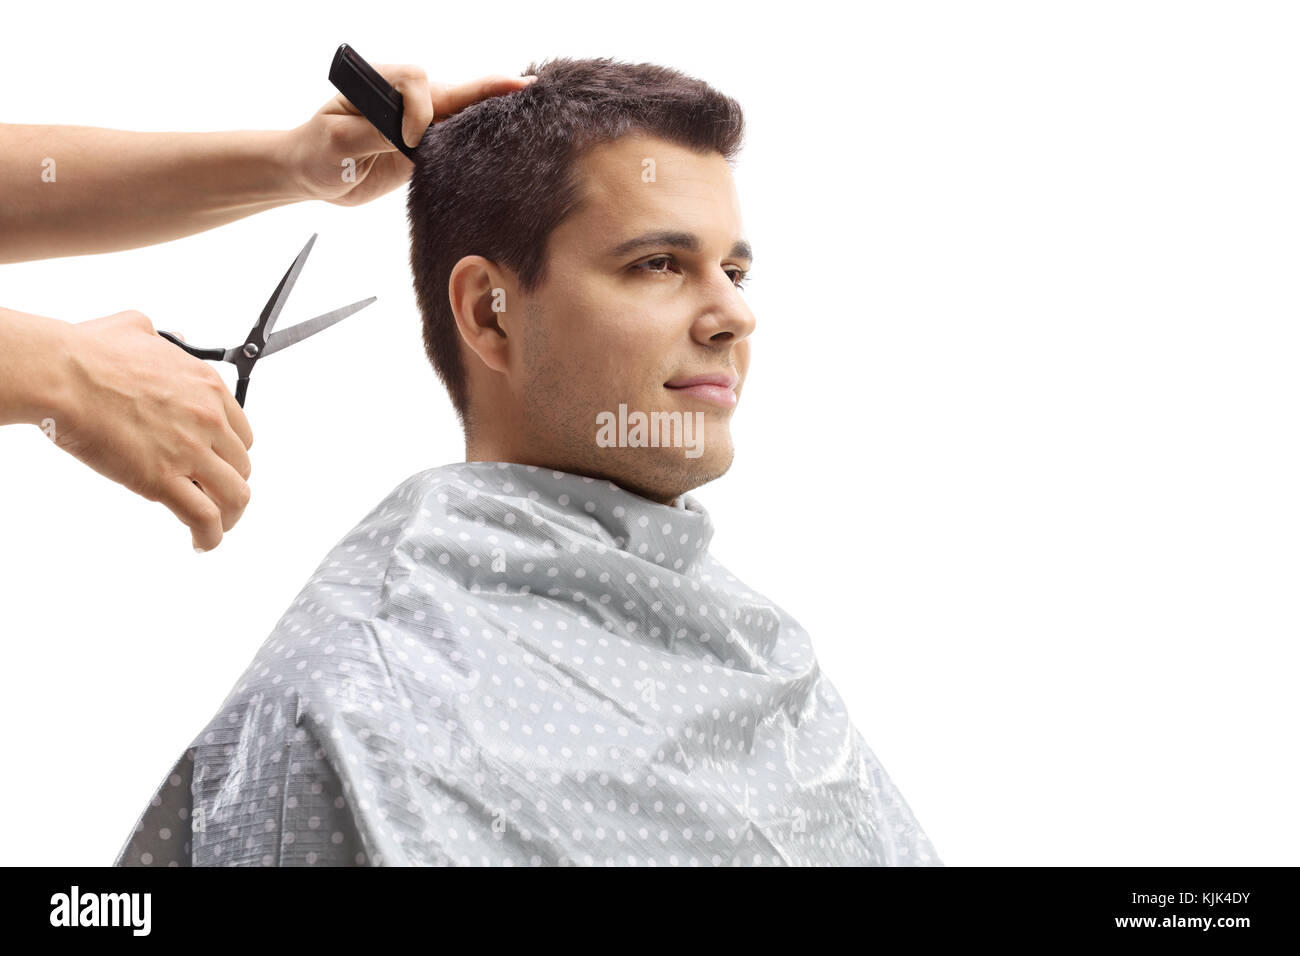 Homme avoir couper les cheveux isolé sur fond blanc Banque D'Images